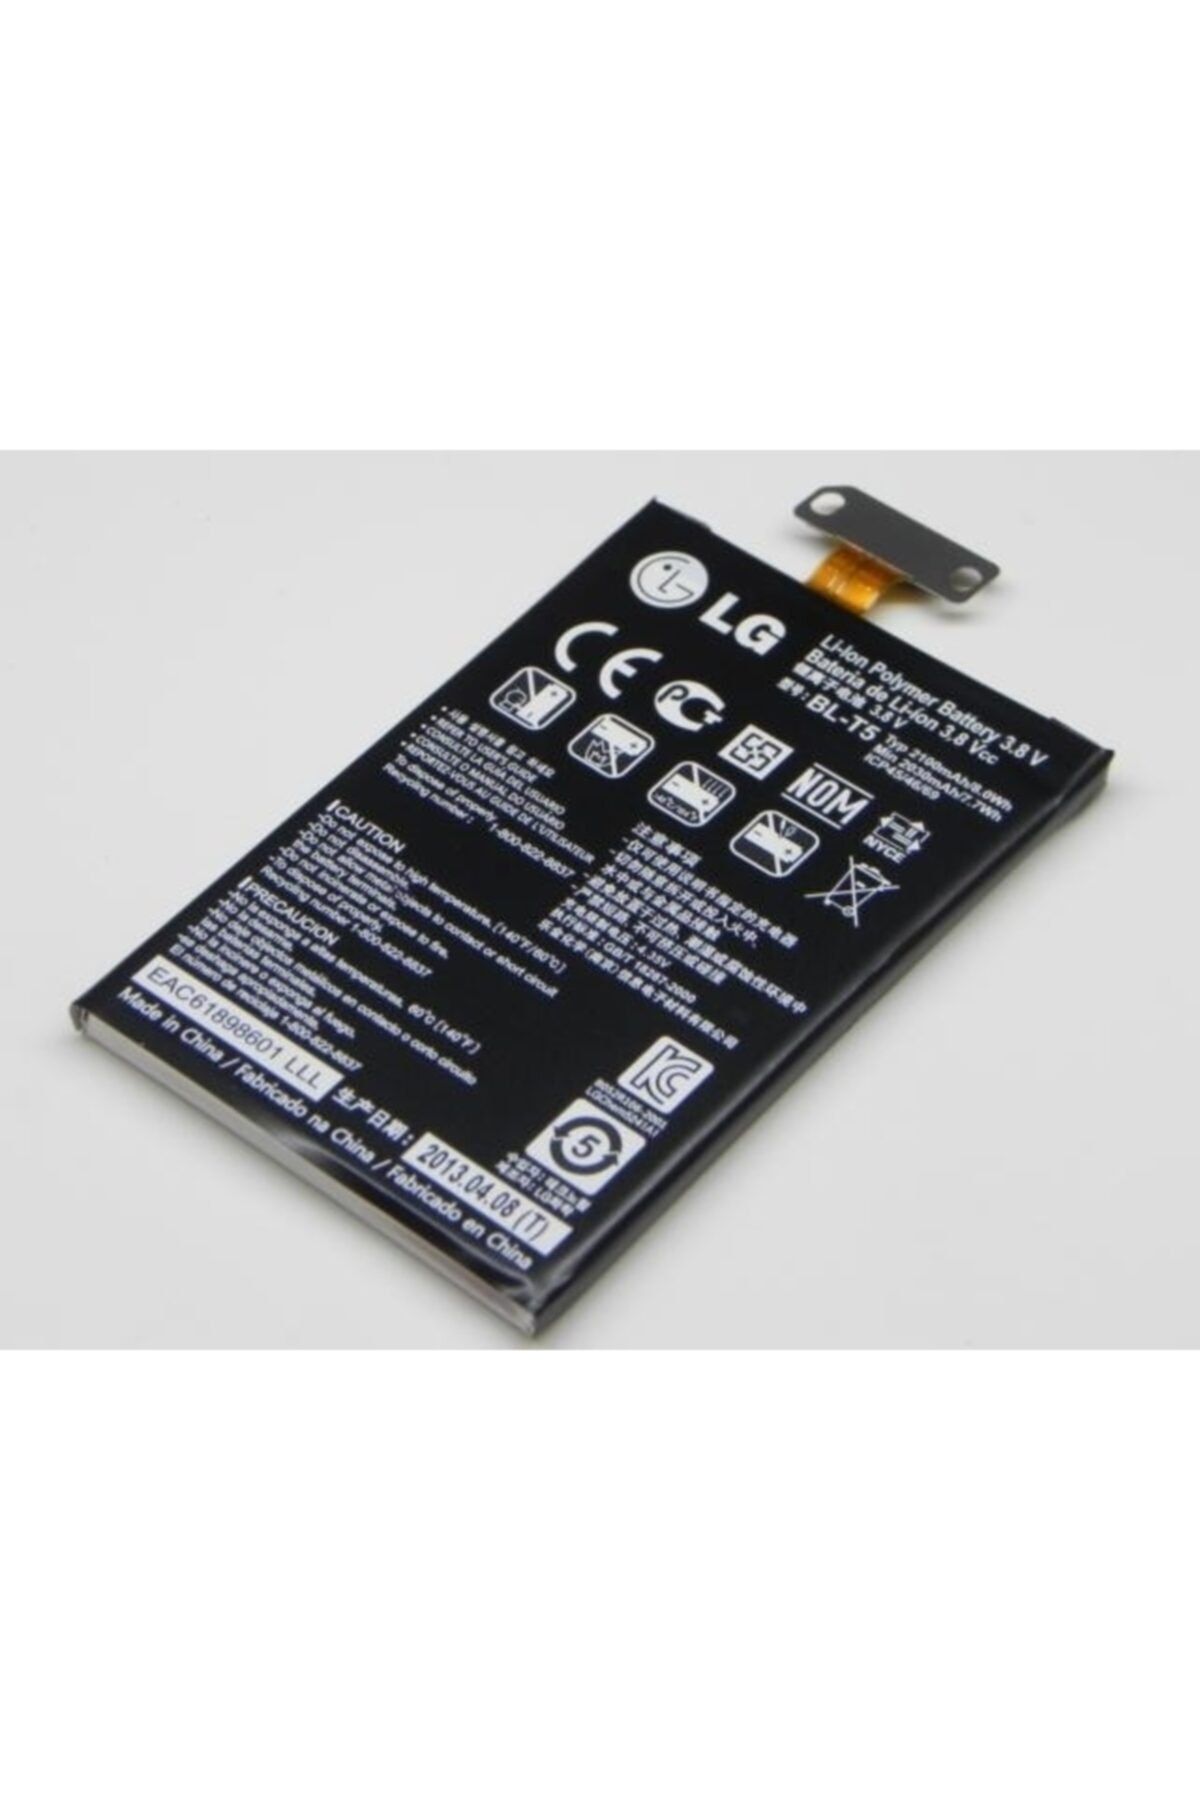 LG Optimus G (bl-t5) E975 Batarya Pil